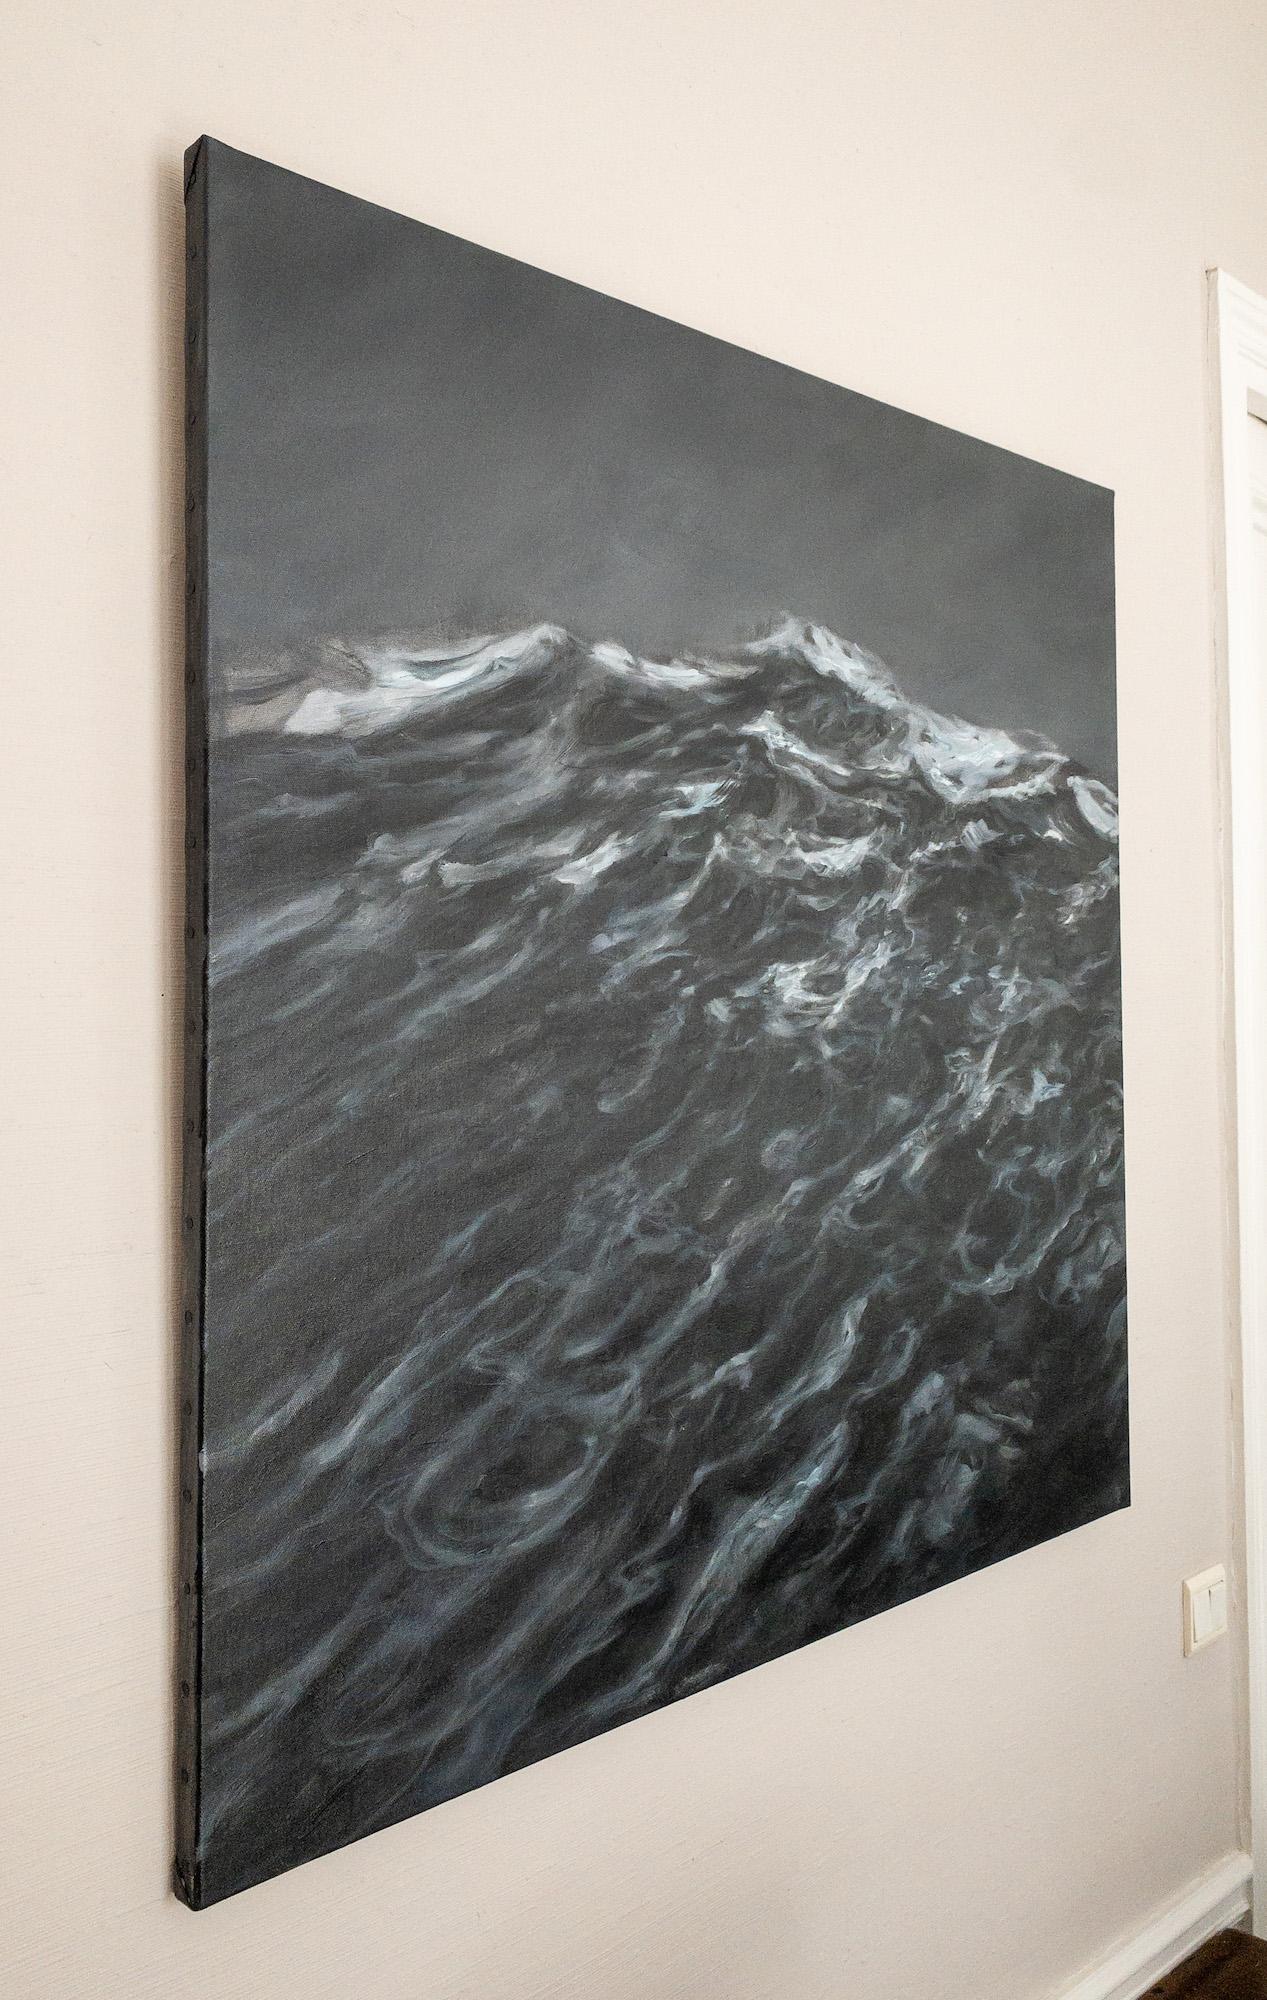 The Outburst by Franco Salas Borquez - Contemporary oil painting, seascape, wave For Sale 3